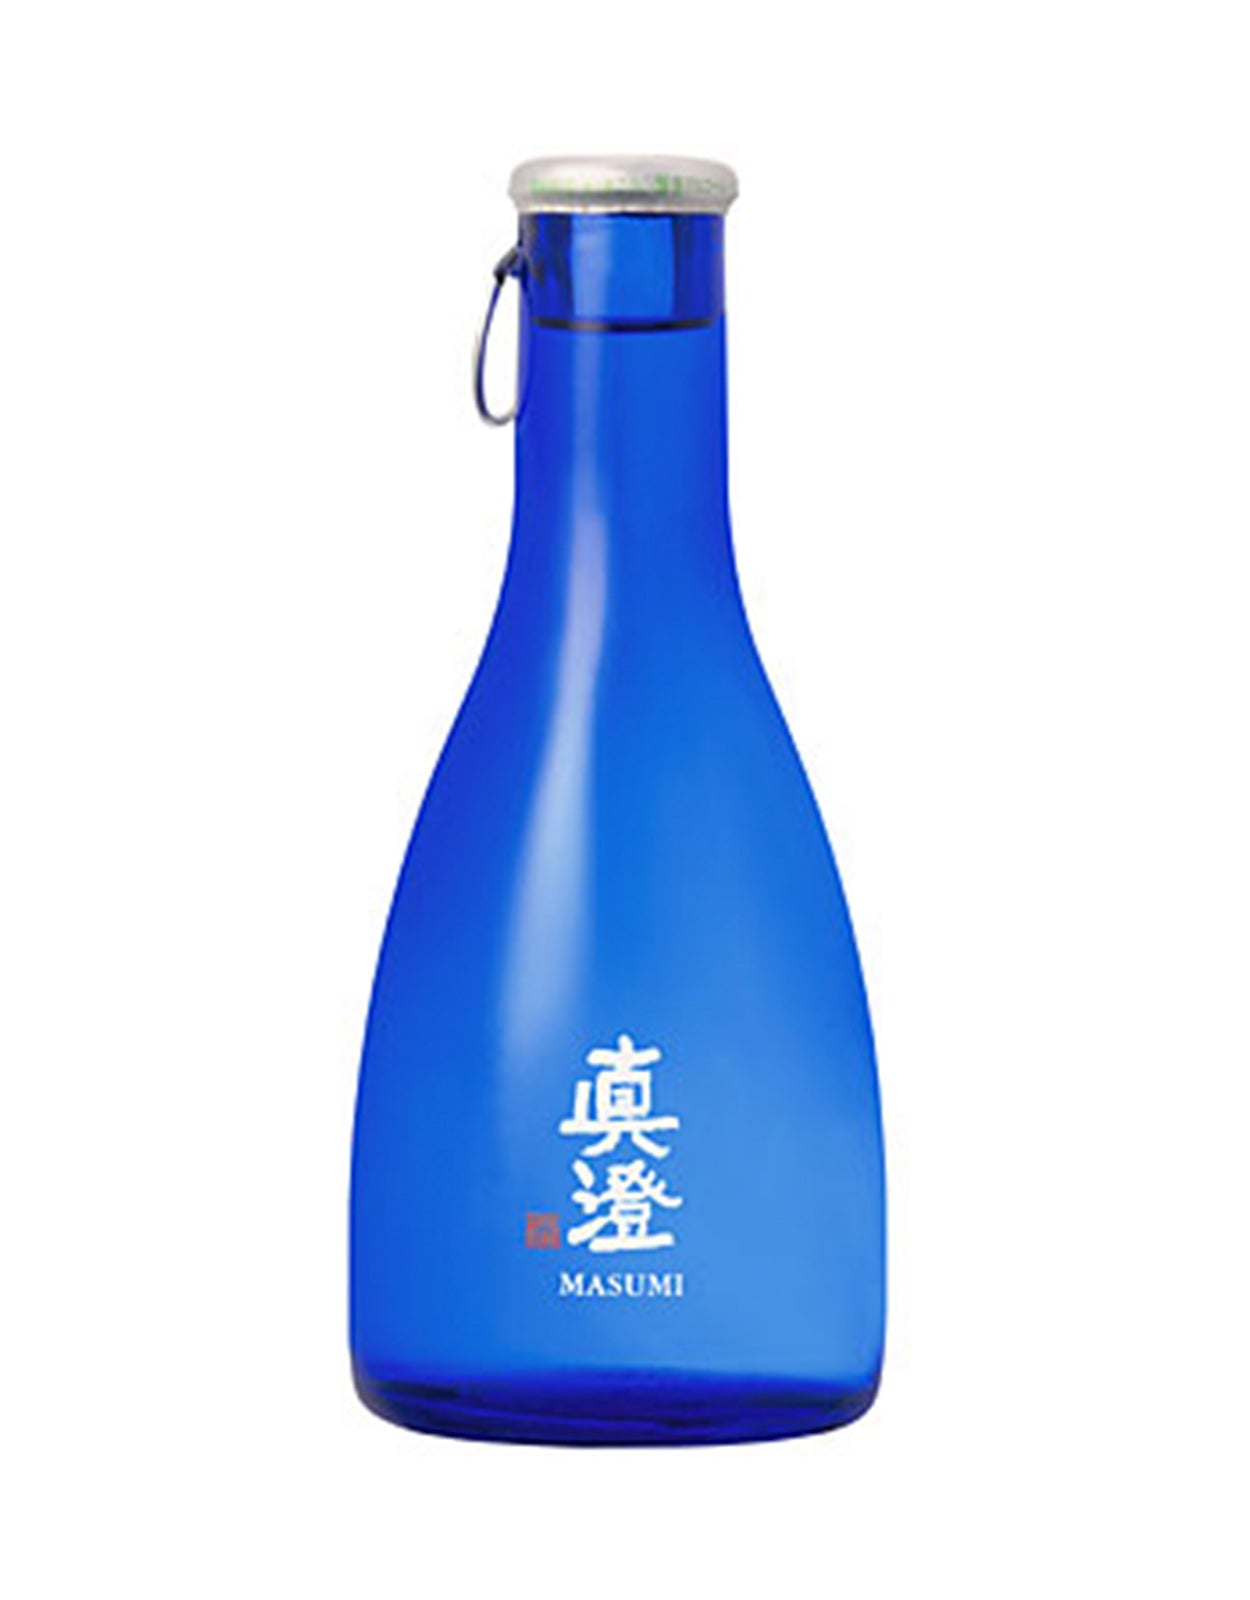 Miyasaka Shuzo Masumi 'Karakuchi Gold' Blue Sake - 180 ml